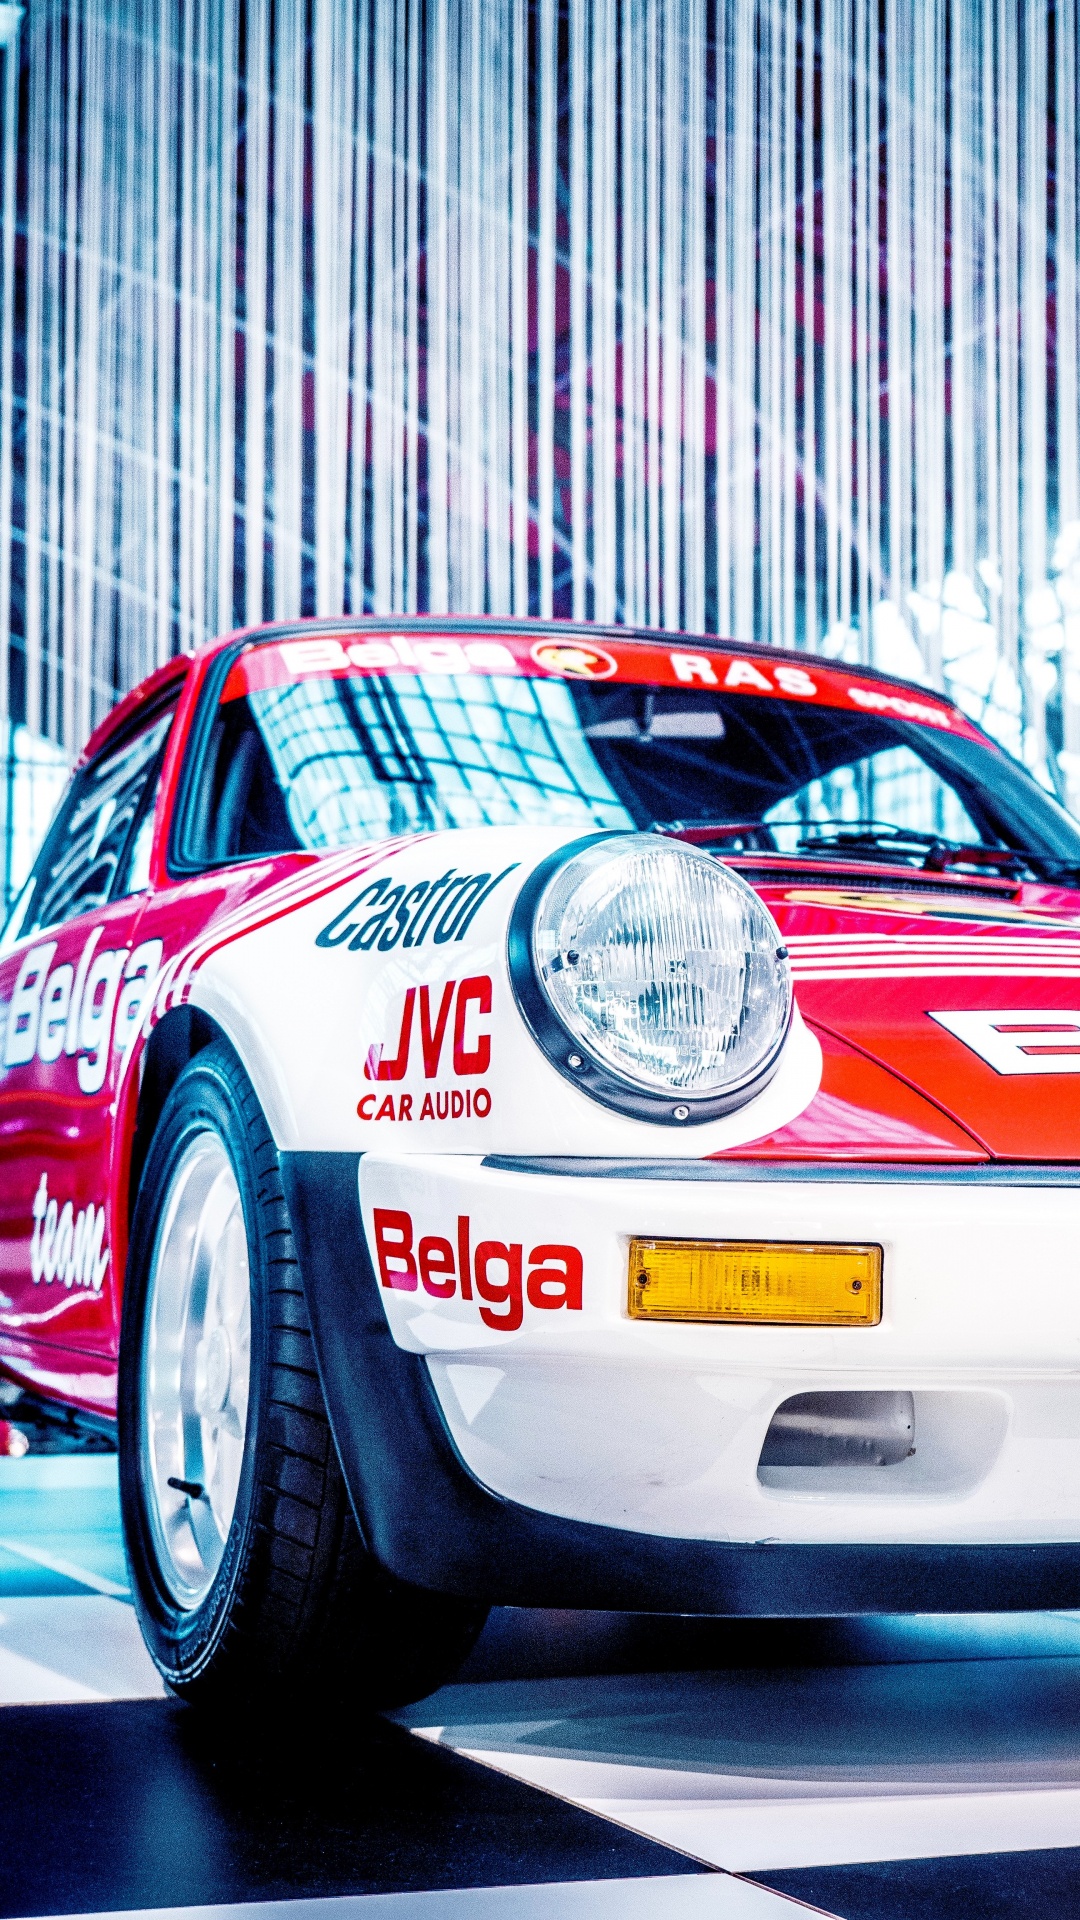 Porsche 911 Blanche et Rouge. Wallpaper in 1080x1920 Resolution